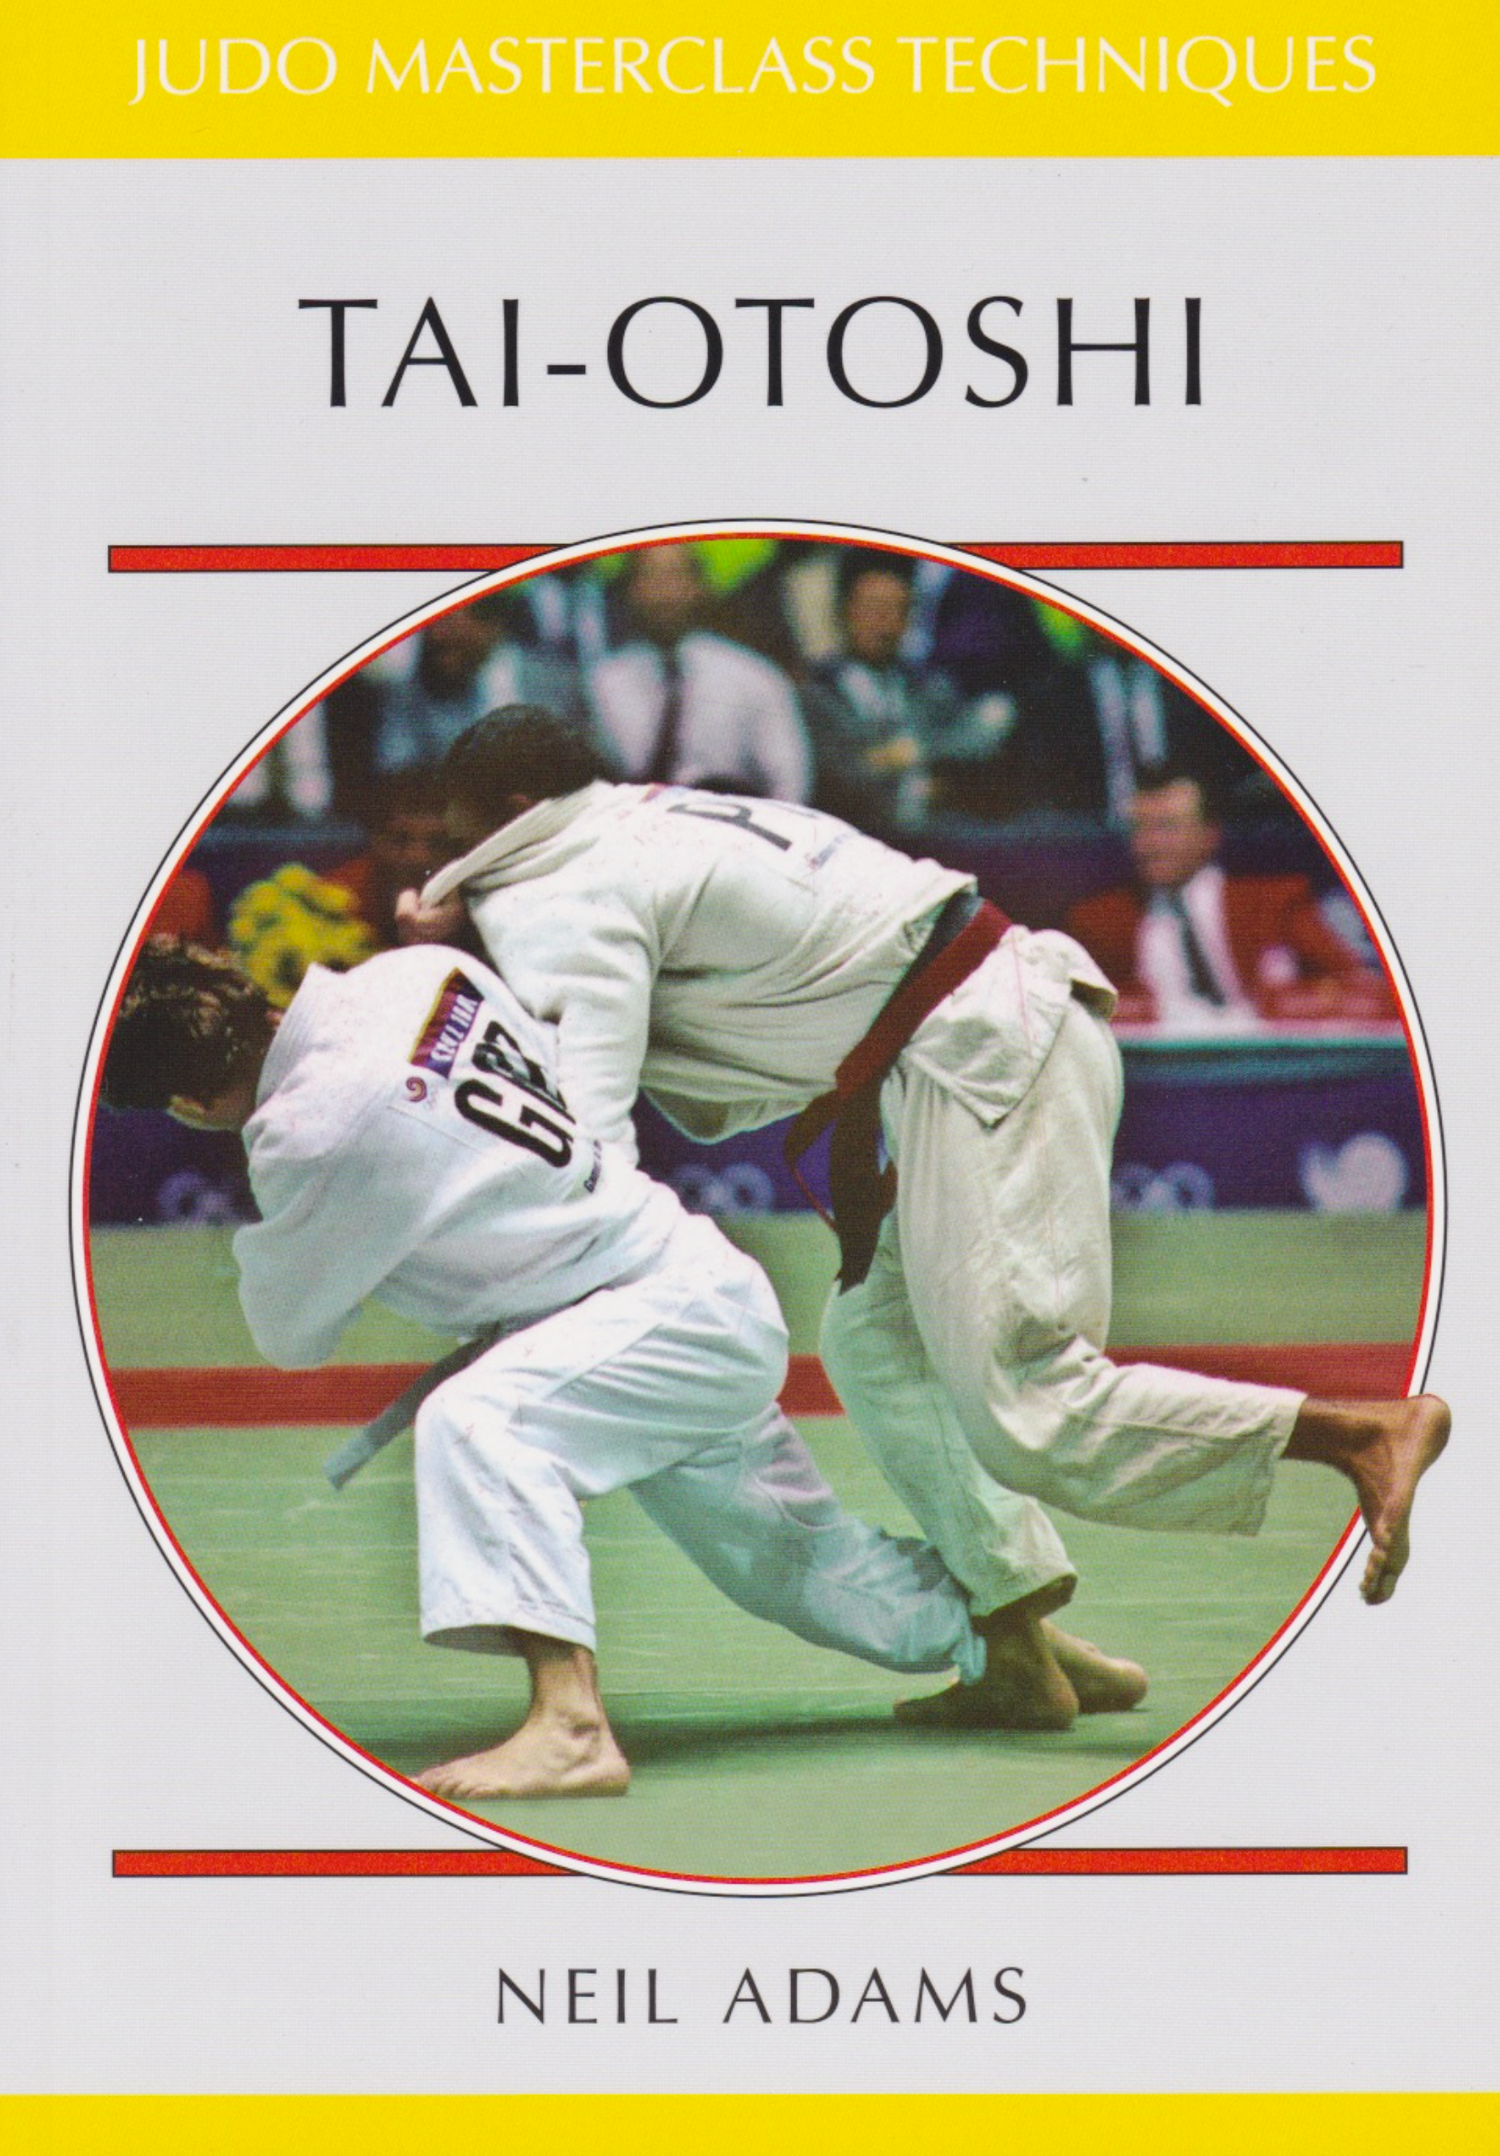 Tai-Otoshi: Judo Masterclass Book by Neil Adams - Budovideos Inc